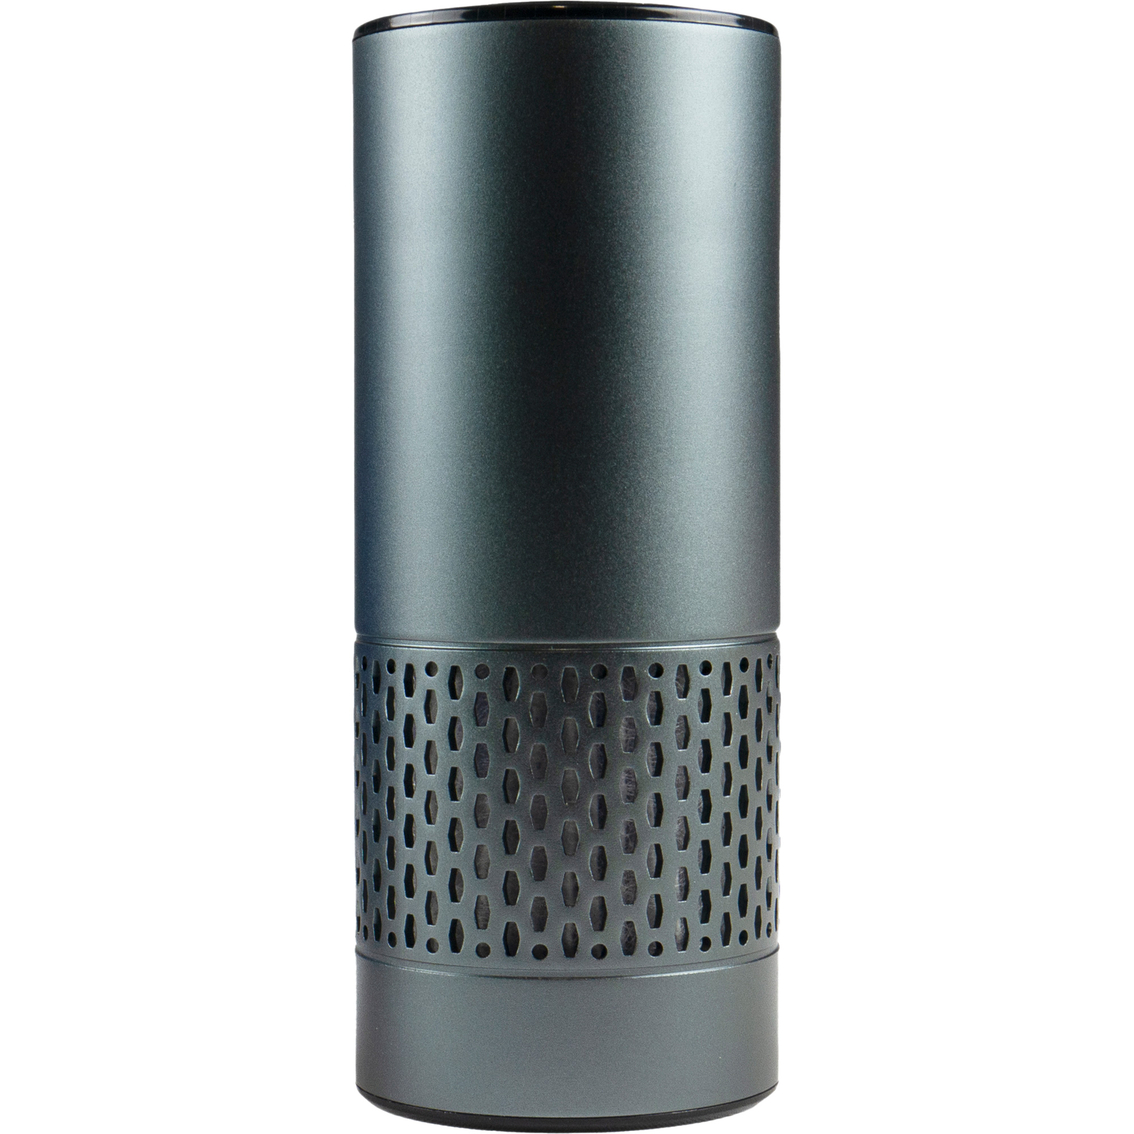 Wagan USB Air Purifier - Image 2 of 8